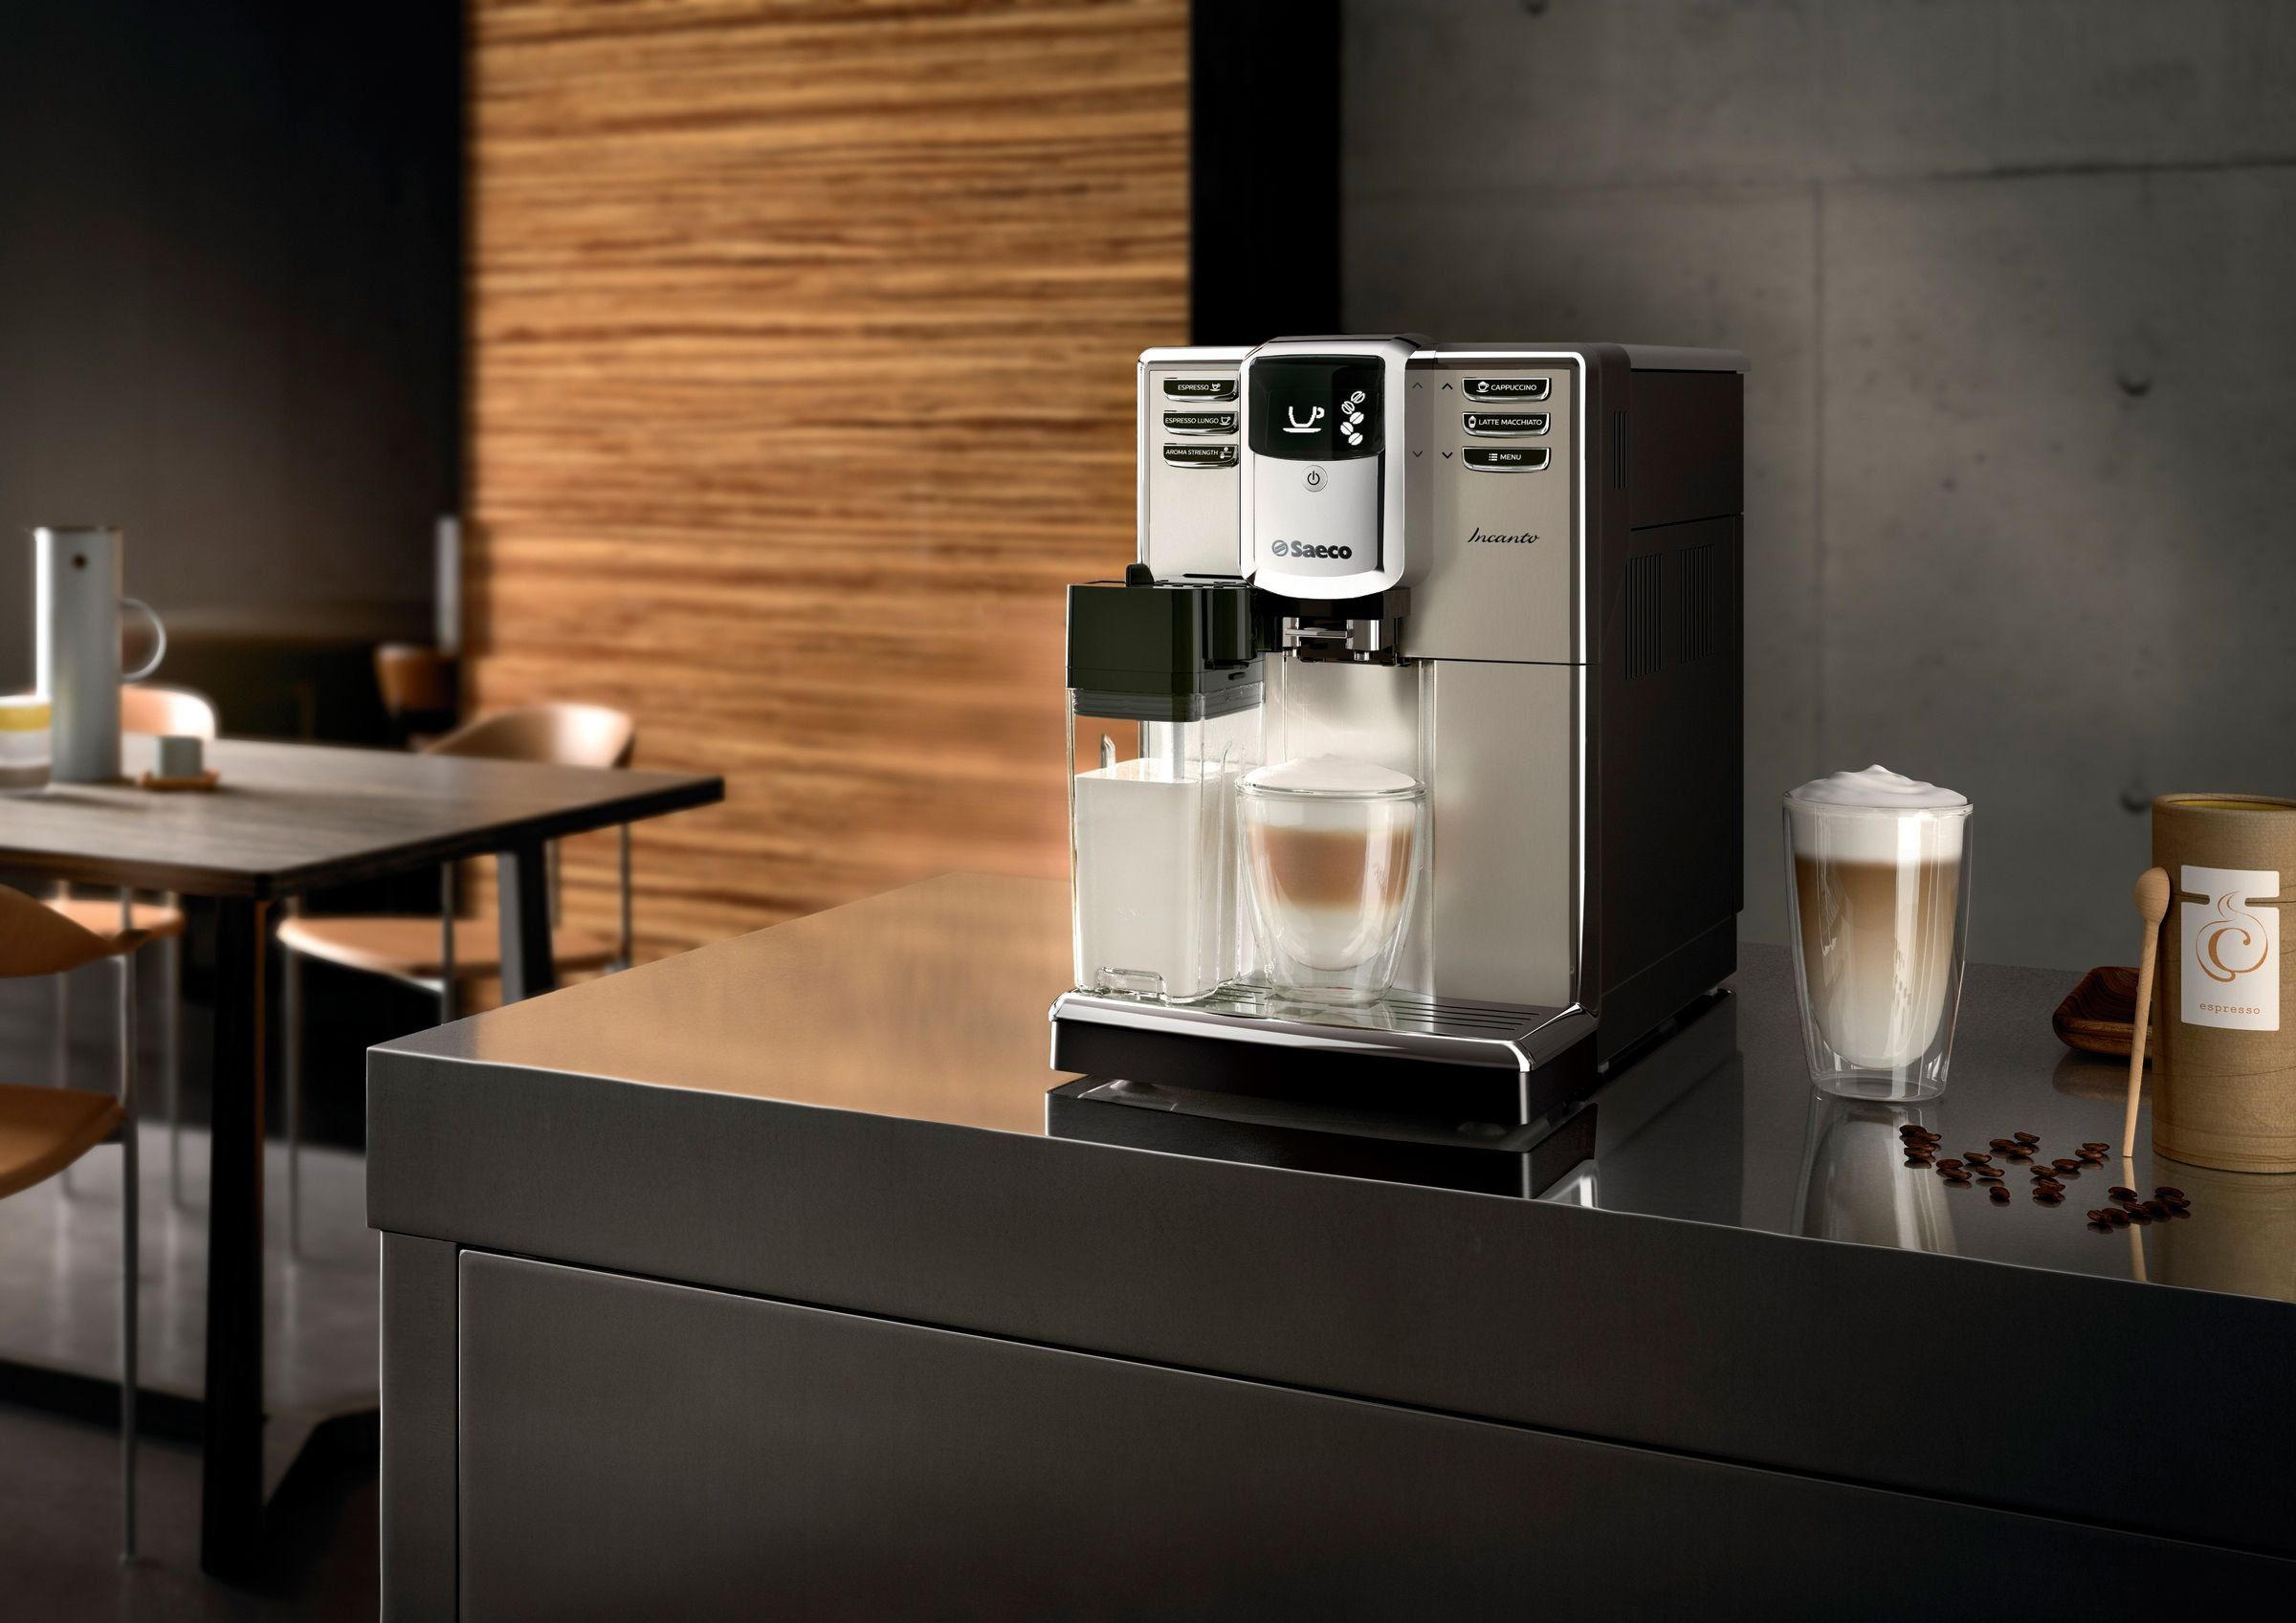 Najbolji Saeco aparati za espresso za dom i ured 2020